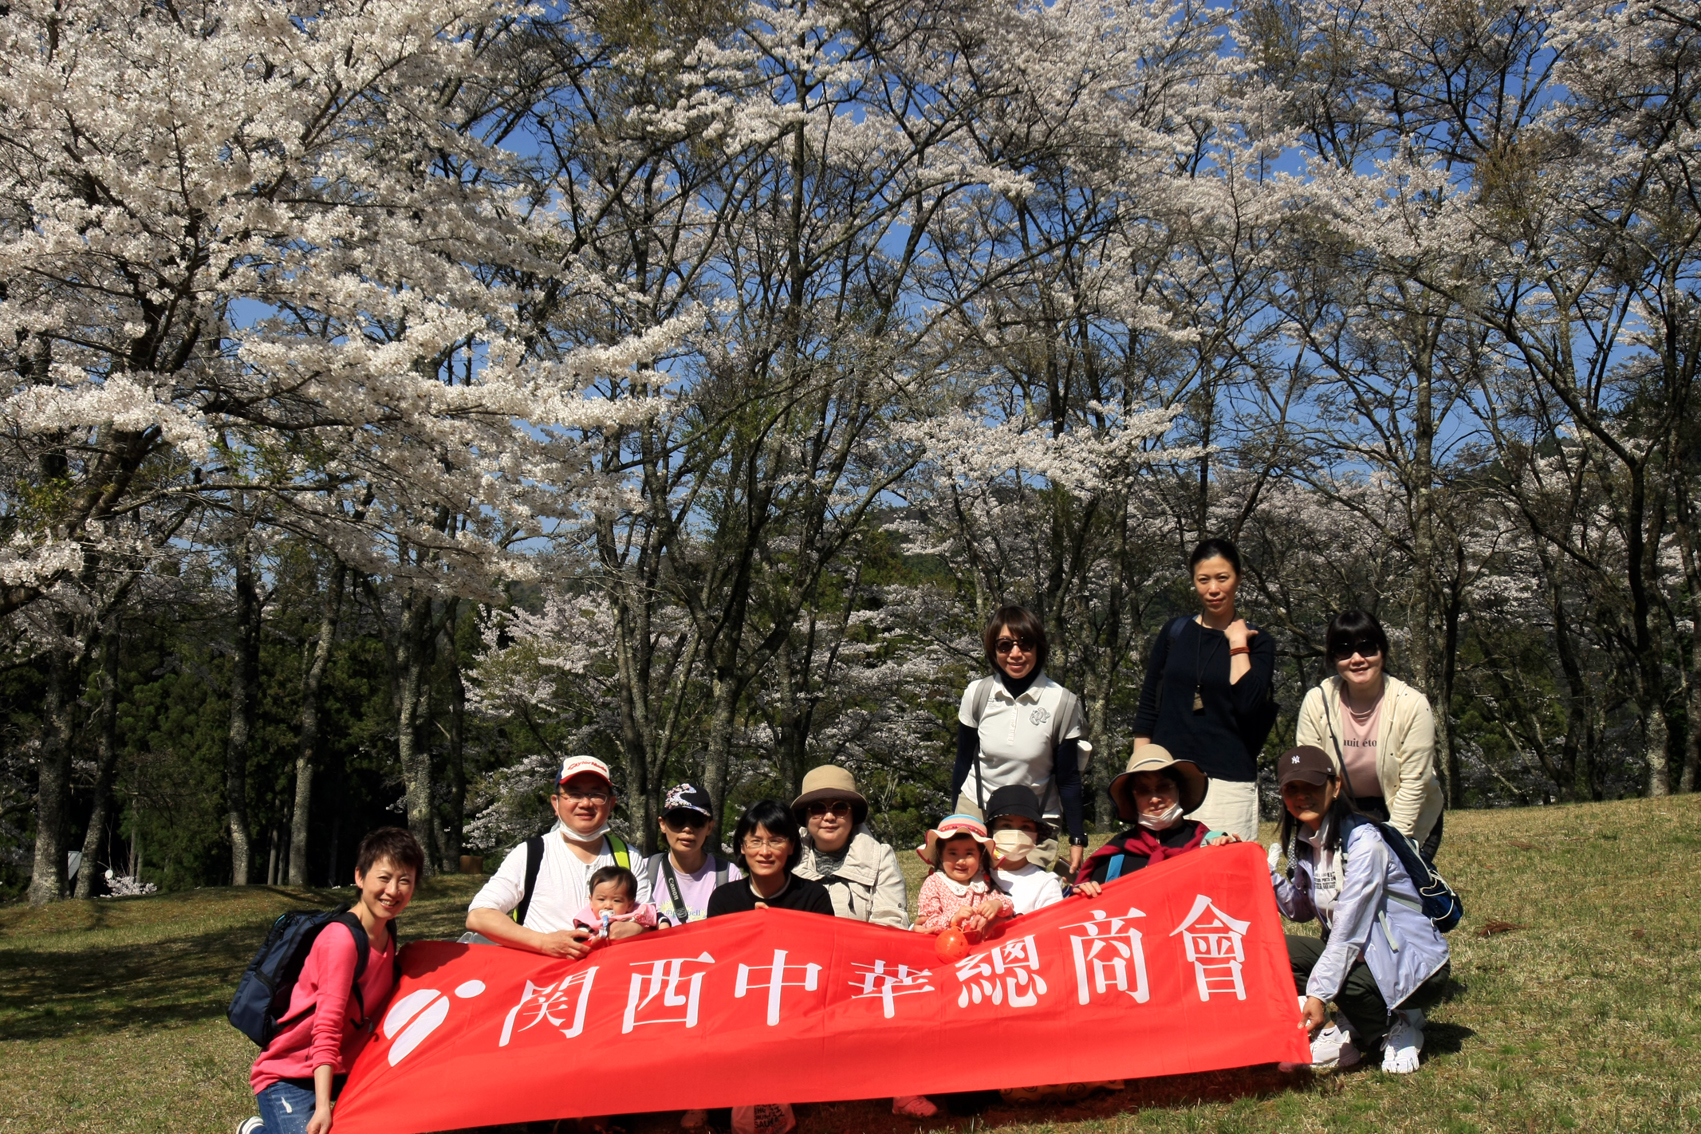 関西中华总商会举办春季郊游活动